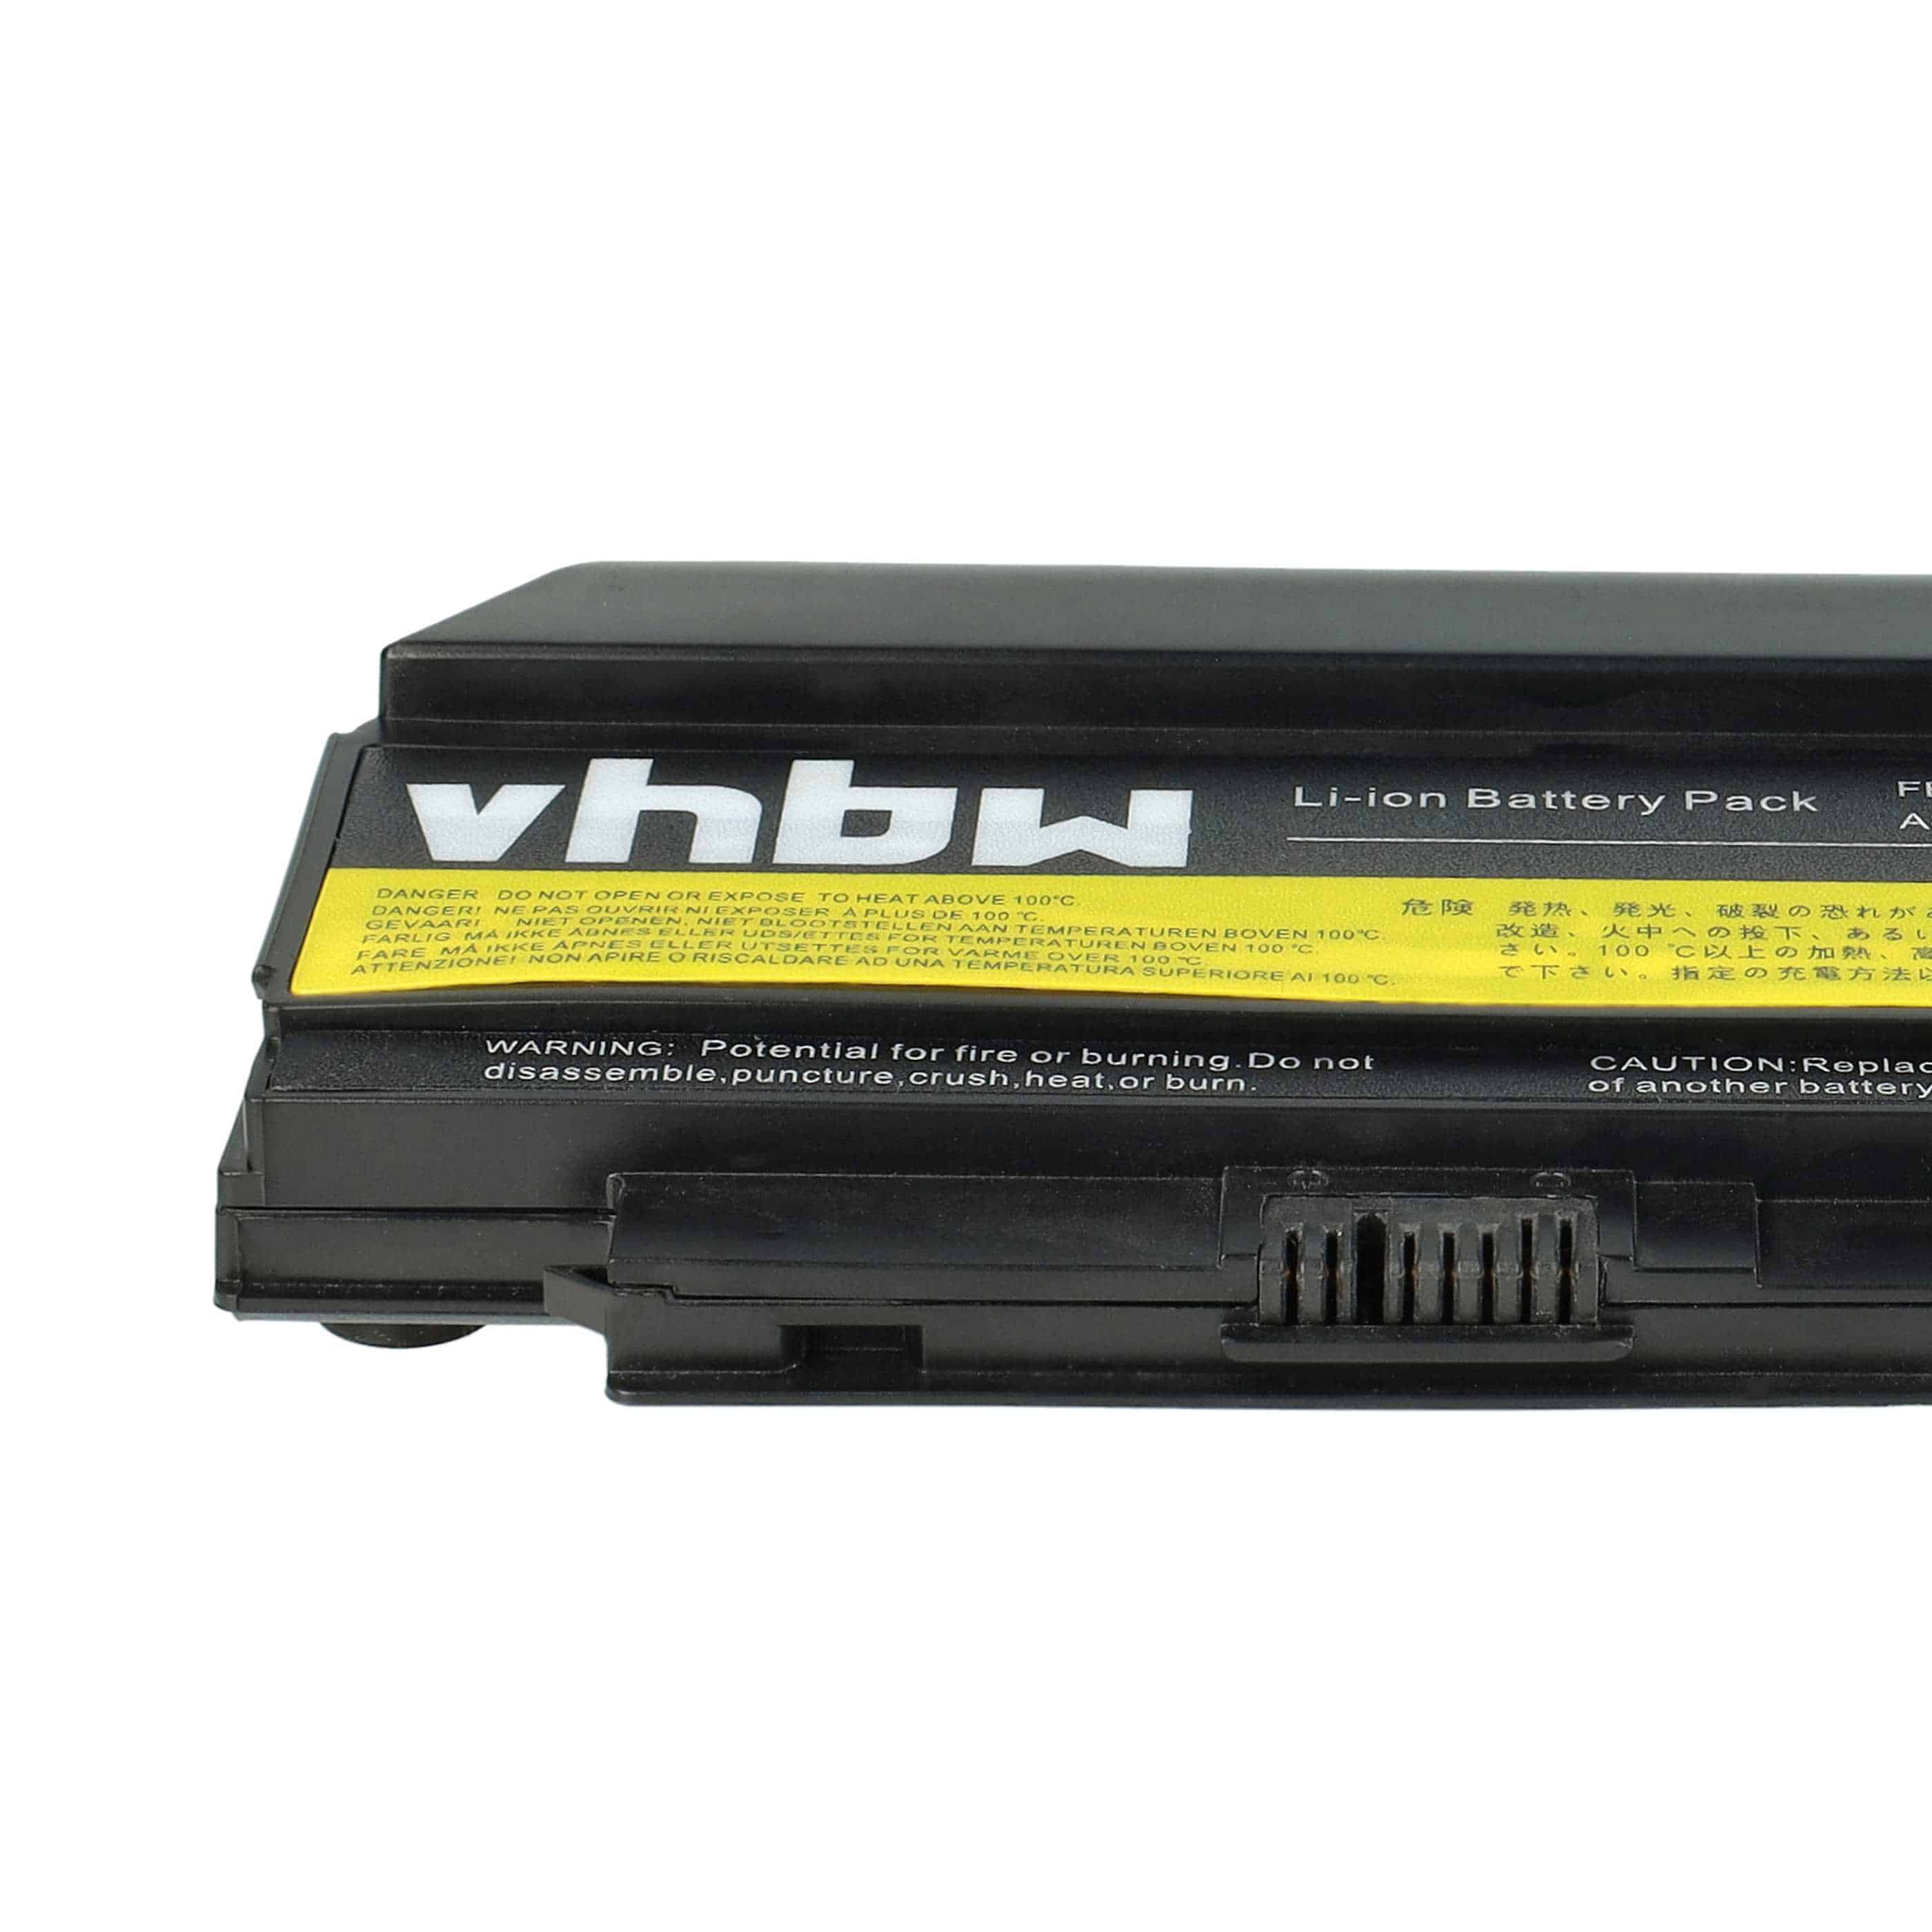 Batterie remplace Lenovo 0A36283, 0A36281, 0A36282 pour ordinateur portable - 6600mAh 10,8V Li-ion, noir